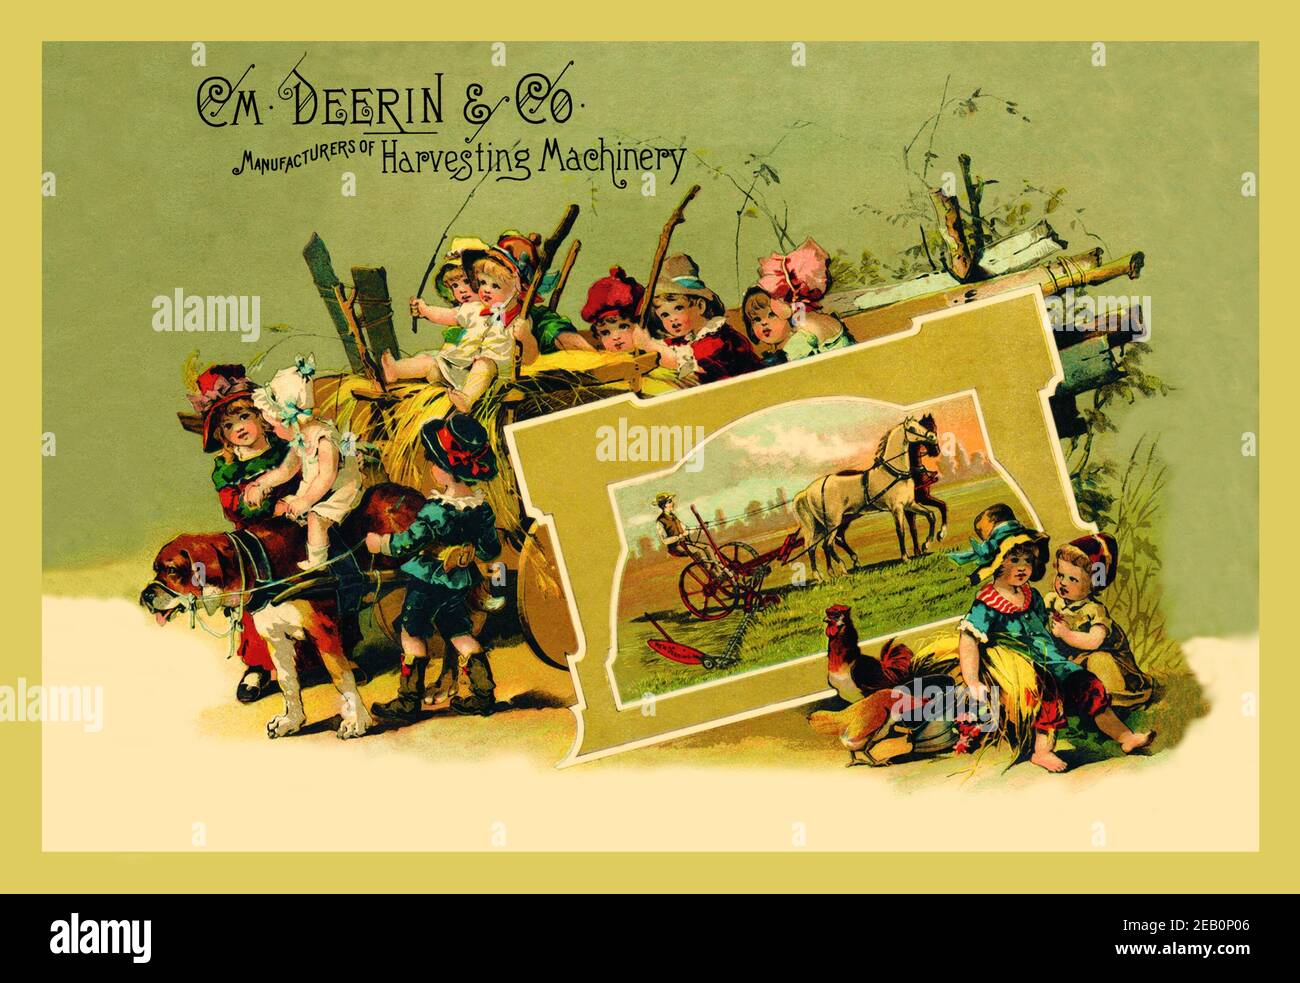 C. M. Deering & Co., Hersteller von Harvesting-Maschinen 1888 Stockfoto